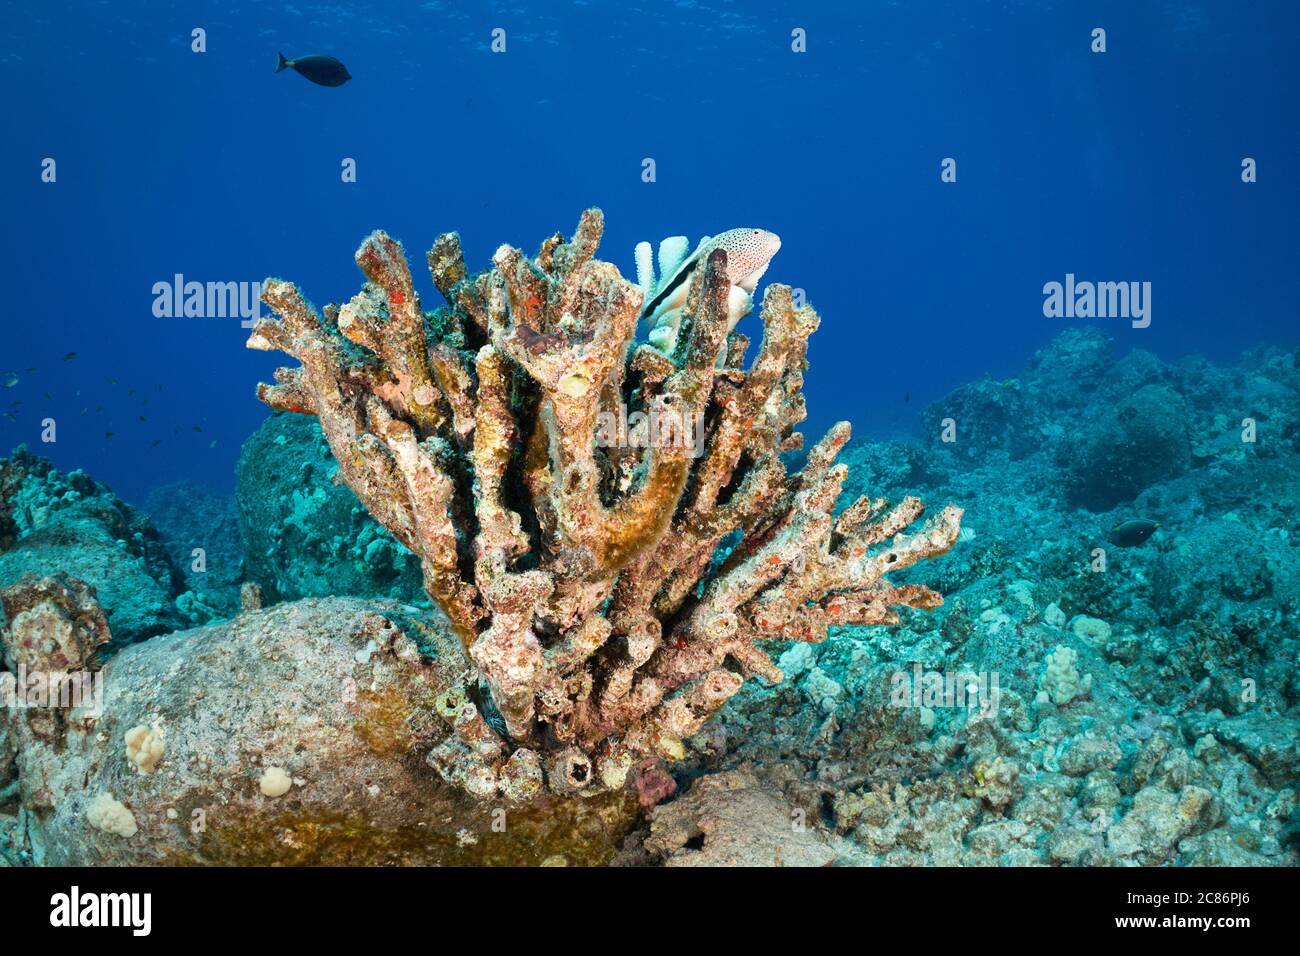 Pesce falco nero, Paracirrhites forsteri, poggiando su corallo antler che ha sbiancato e morto a causa delle alte temperature dell'acqua, Kona Hawaii Foto Stock